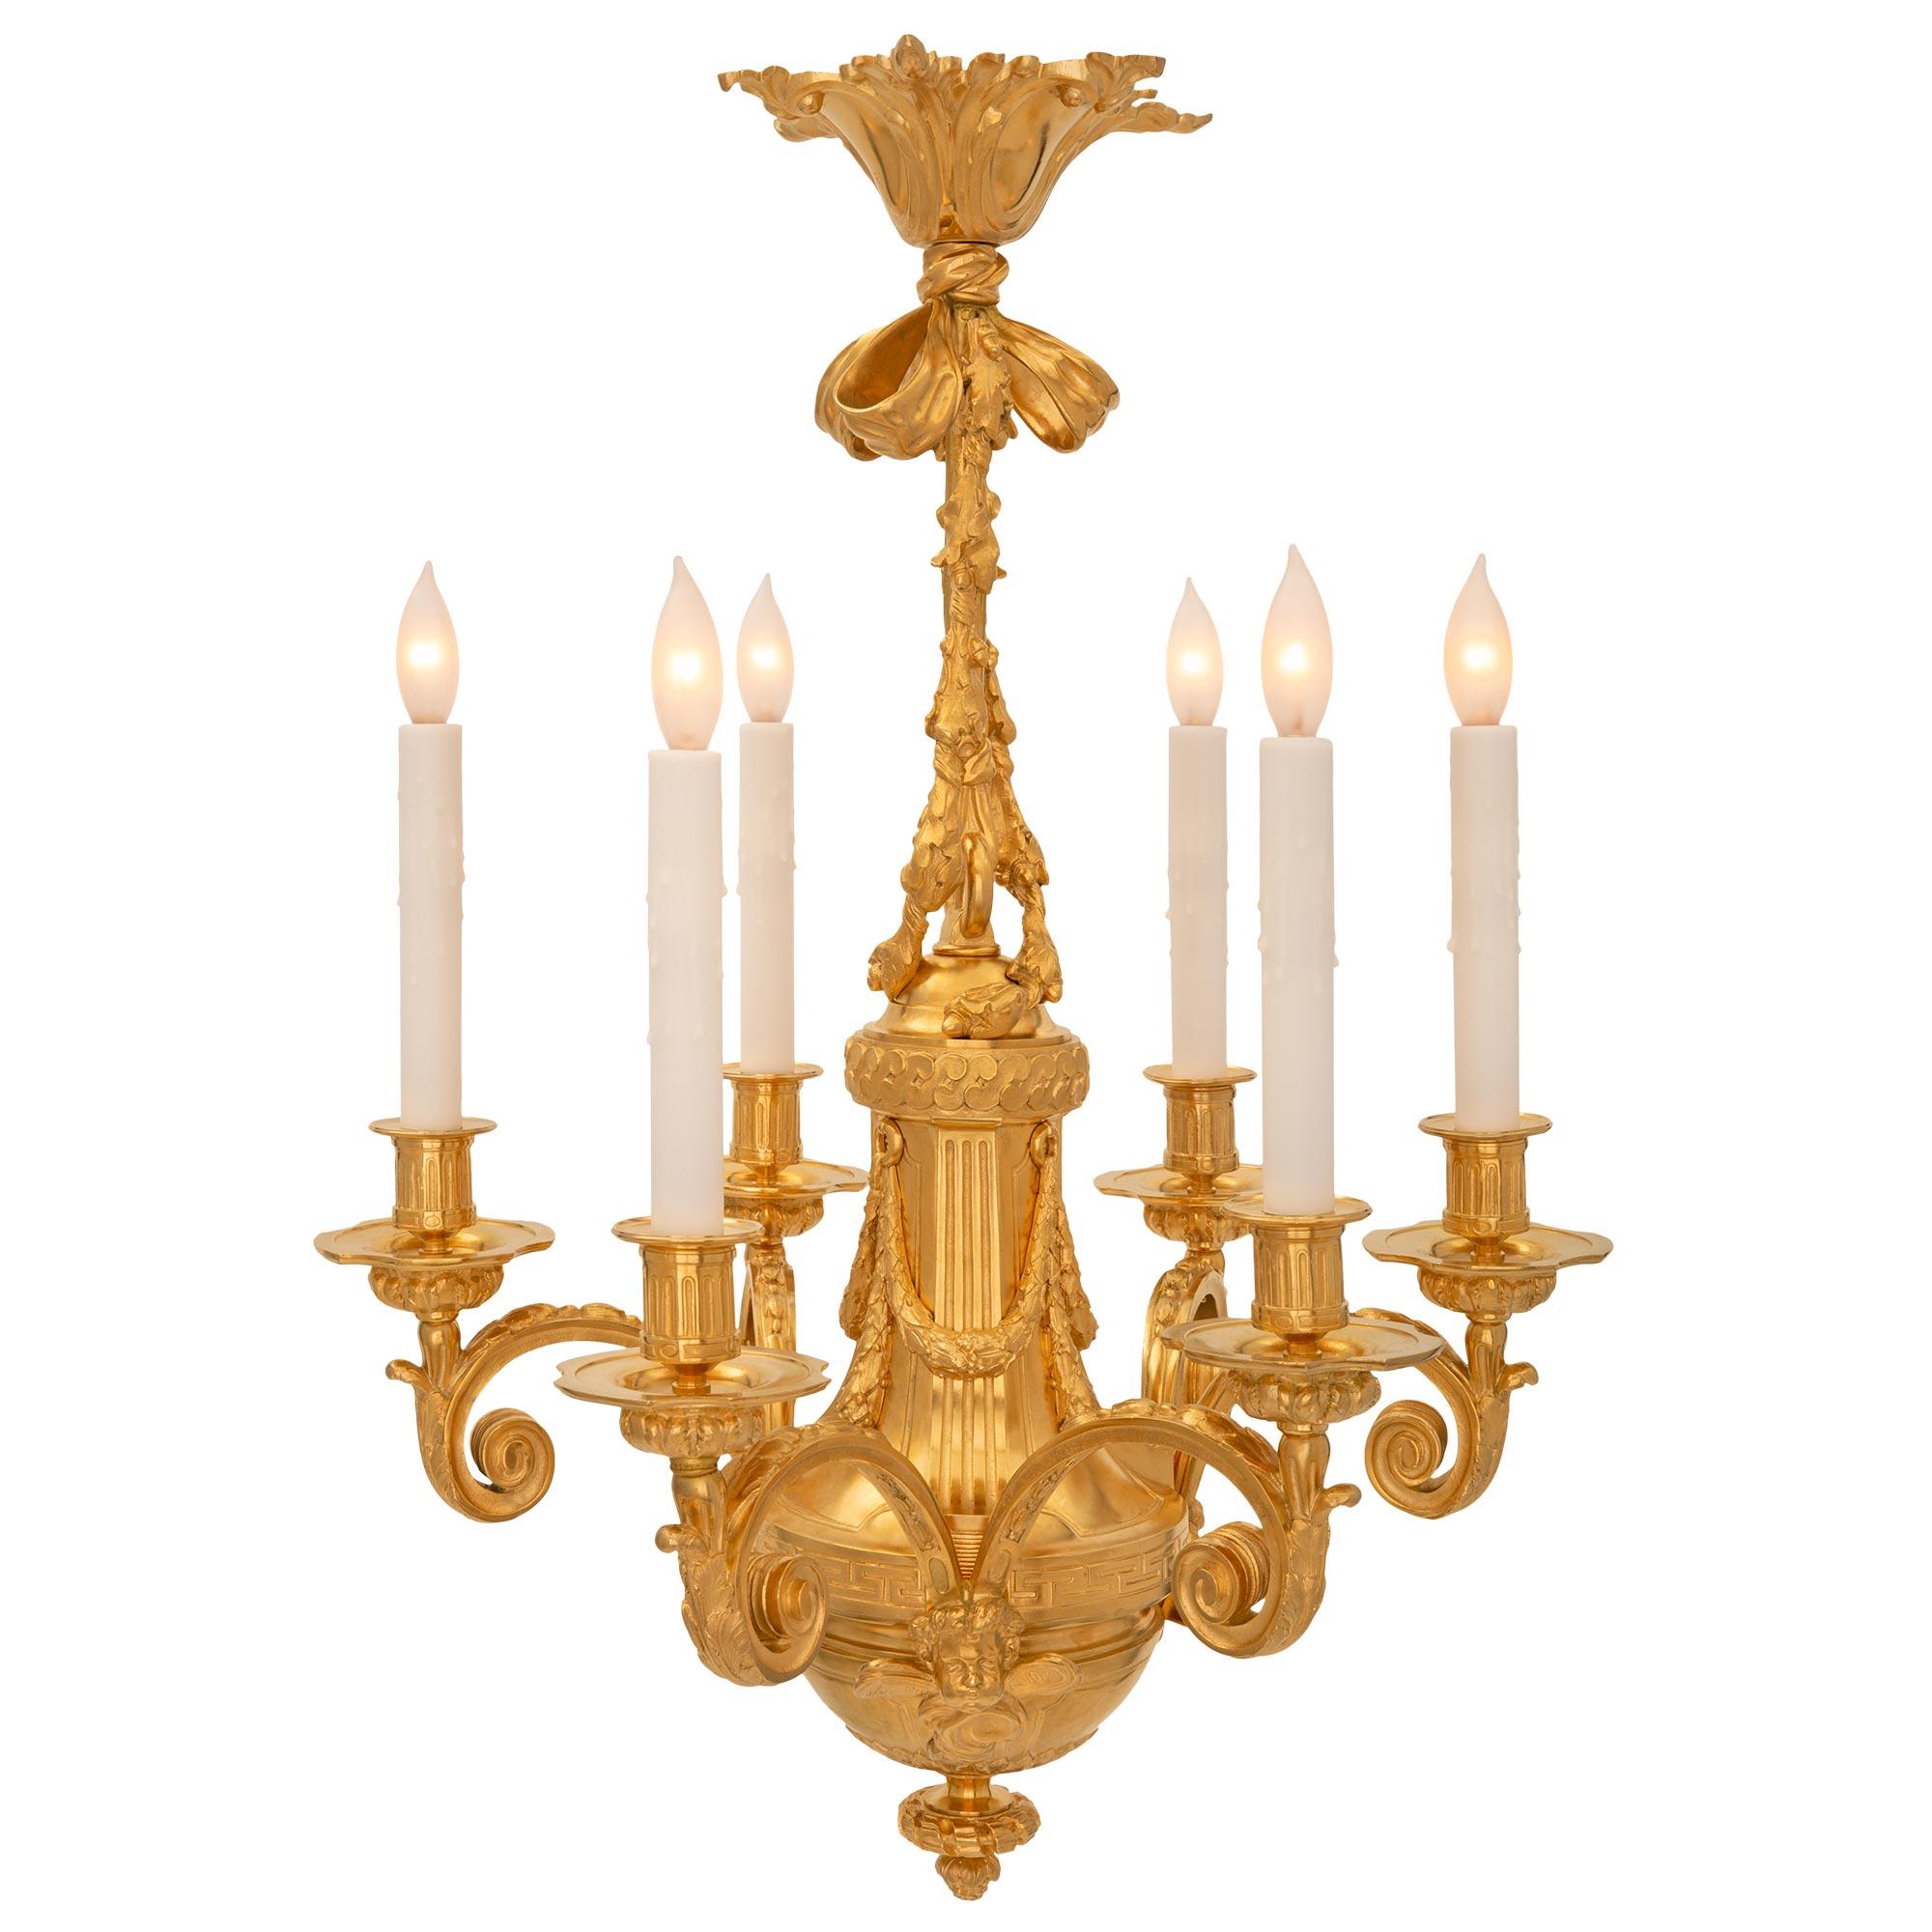 Un superbe lustre français du 19ème siècle en st. Louis XVI et bronze doré. Le lustre à six bras est centré par un élégant fleuron inférieur en forme de gland et de ruban torsadé sous le corps en forme de dôme. Trois paires d'élégants bras à volutes